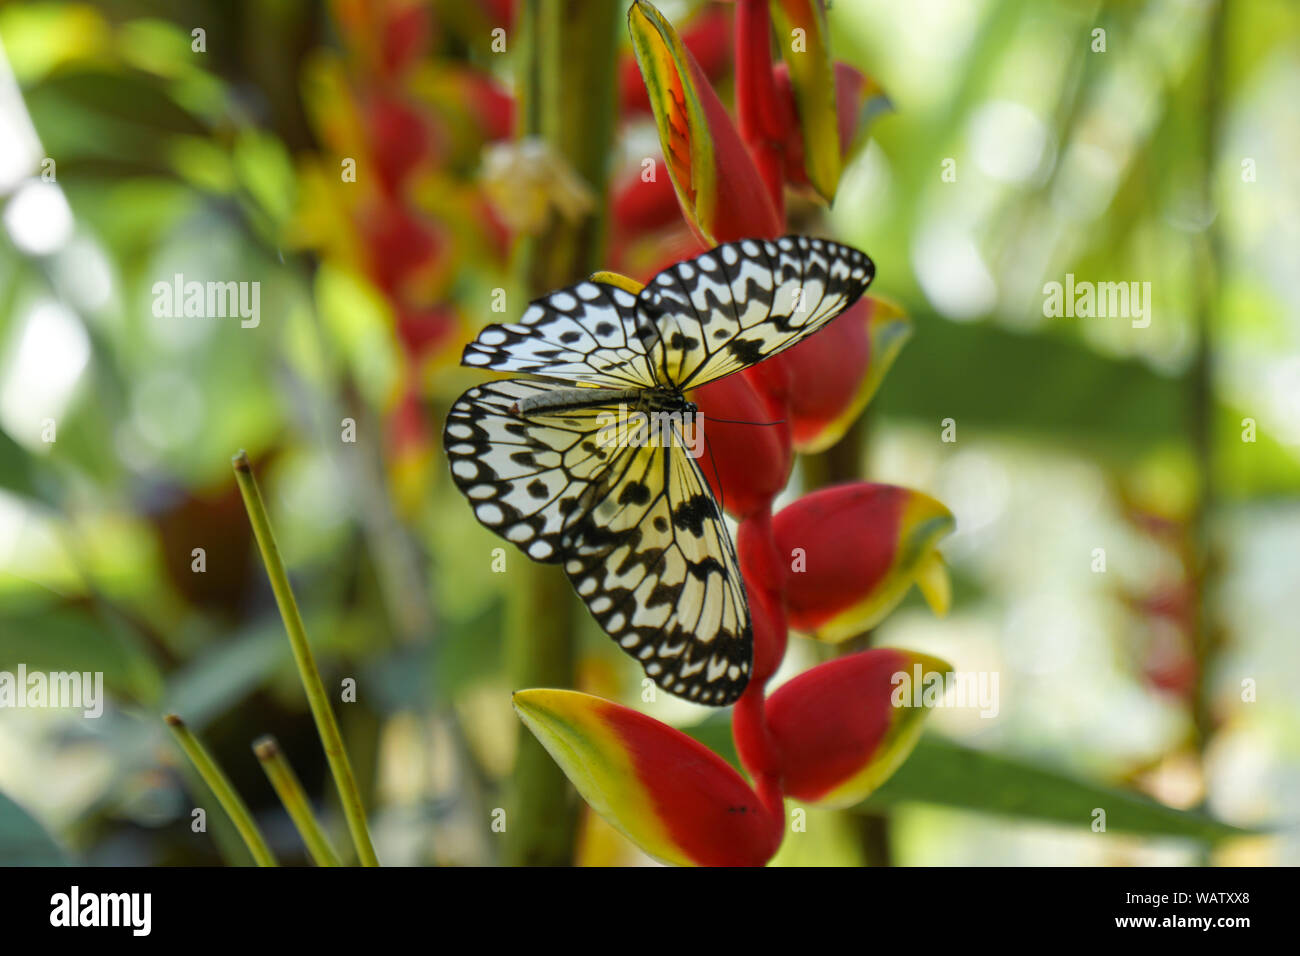 Ein Schmetterling der Philippinen, Bohol erschossen in der Nähe eines Waldes. Die gelben und schwarzen Schmetterling sitzt auf einem roten Blüte. Stockfoto